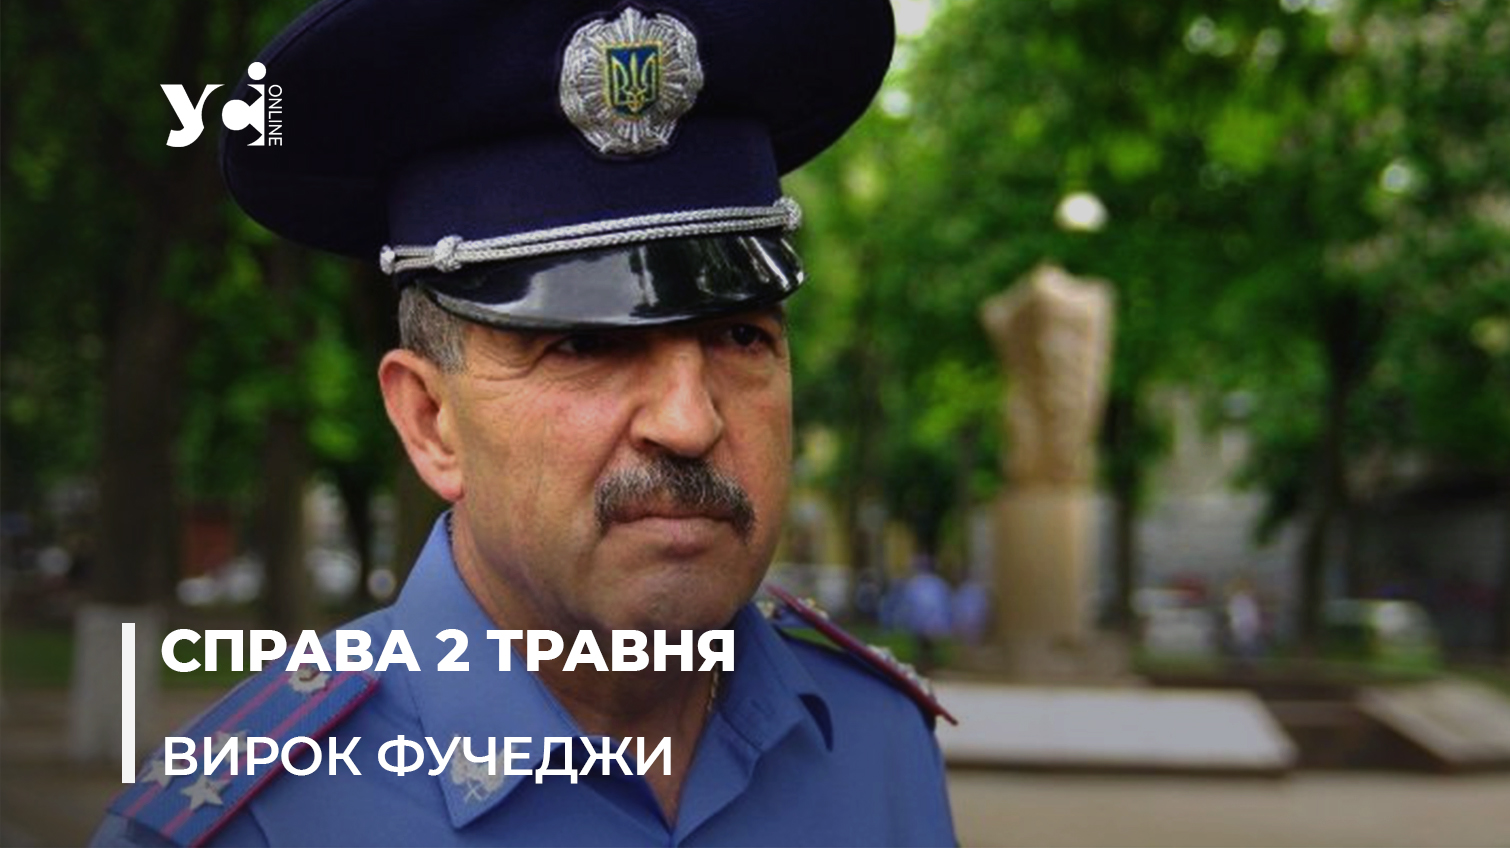 15 років за гратами. Суд оголосив вирок полковнику поліції за бездіяльність 2 травня 2014 року в Одесі (ОНОВЛЕНО) «фото»